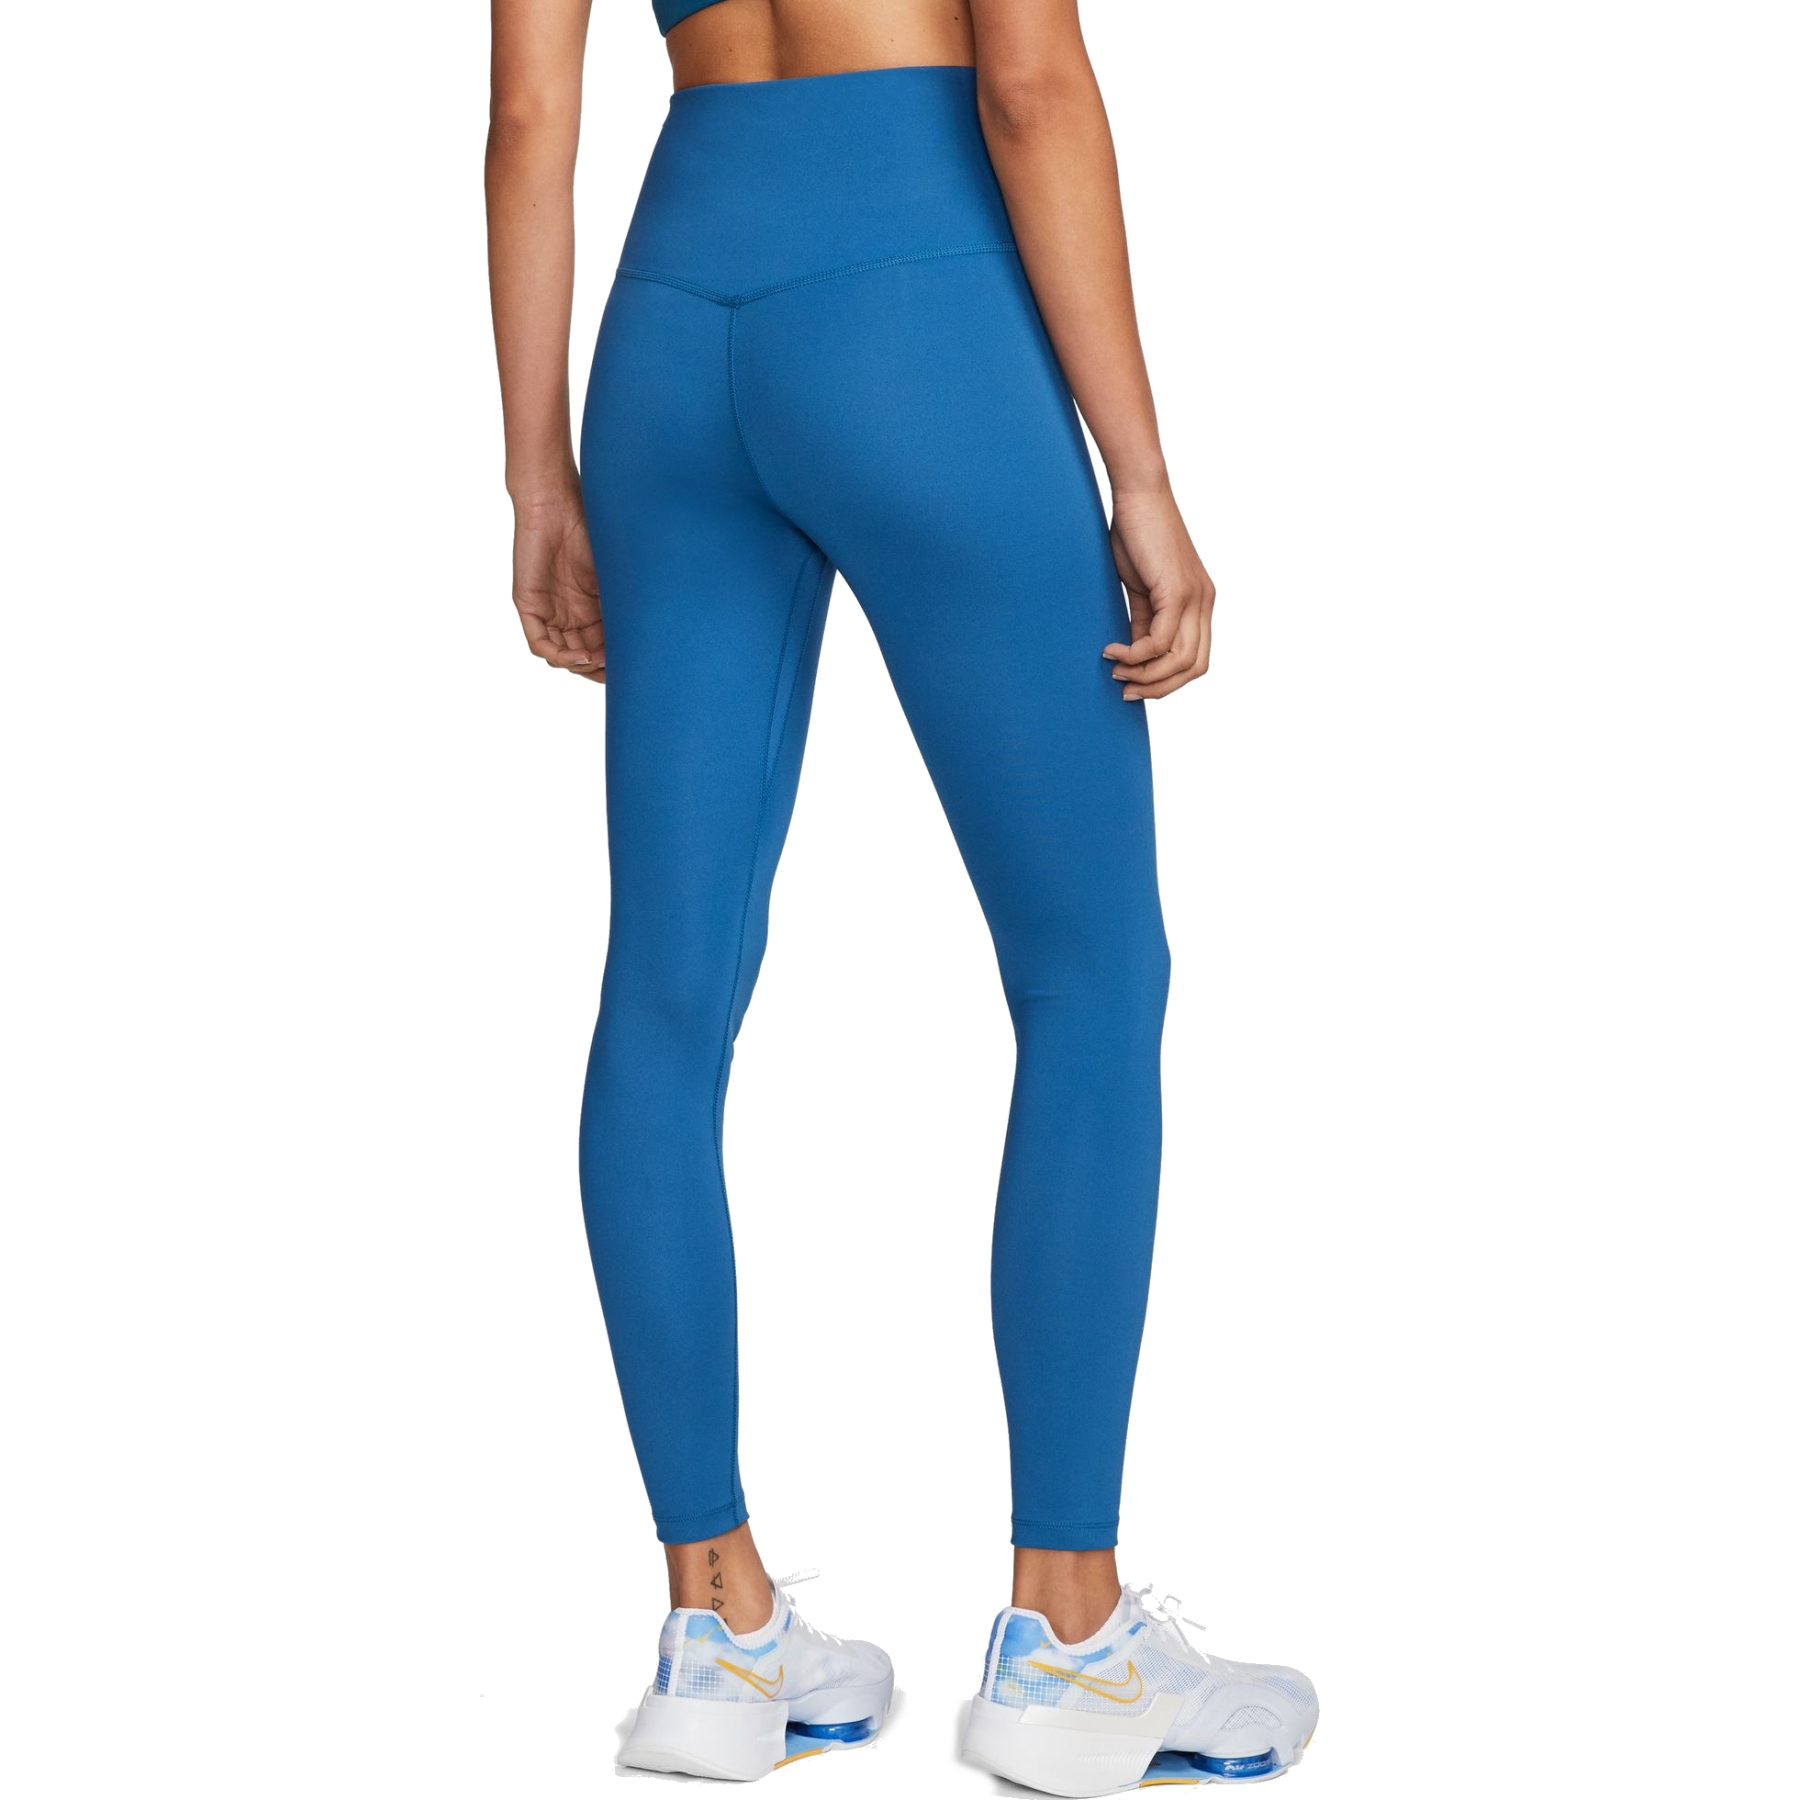 Nike yoga lx 78 tight, pants, Training